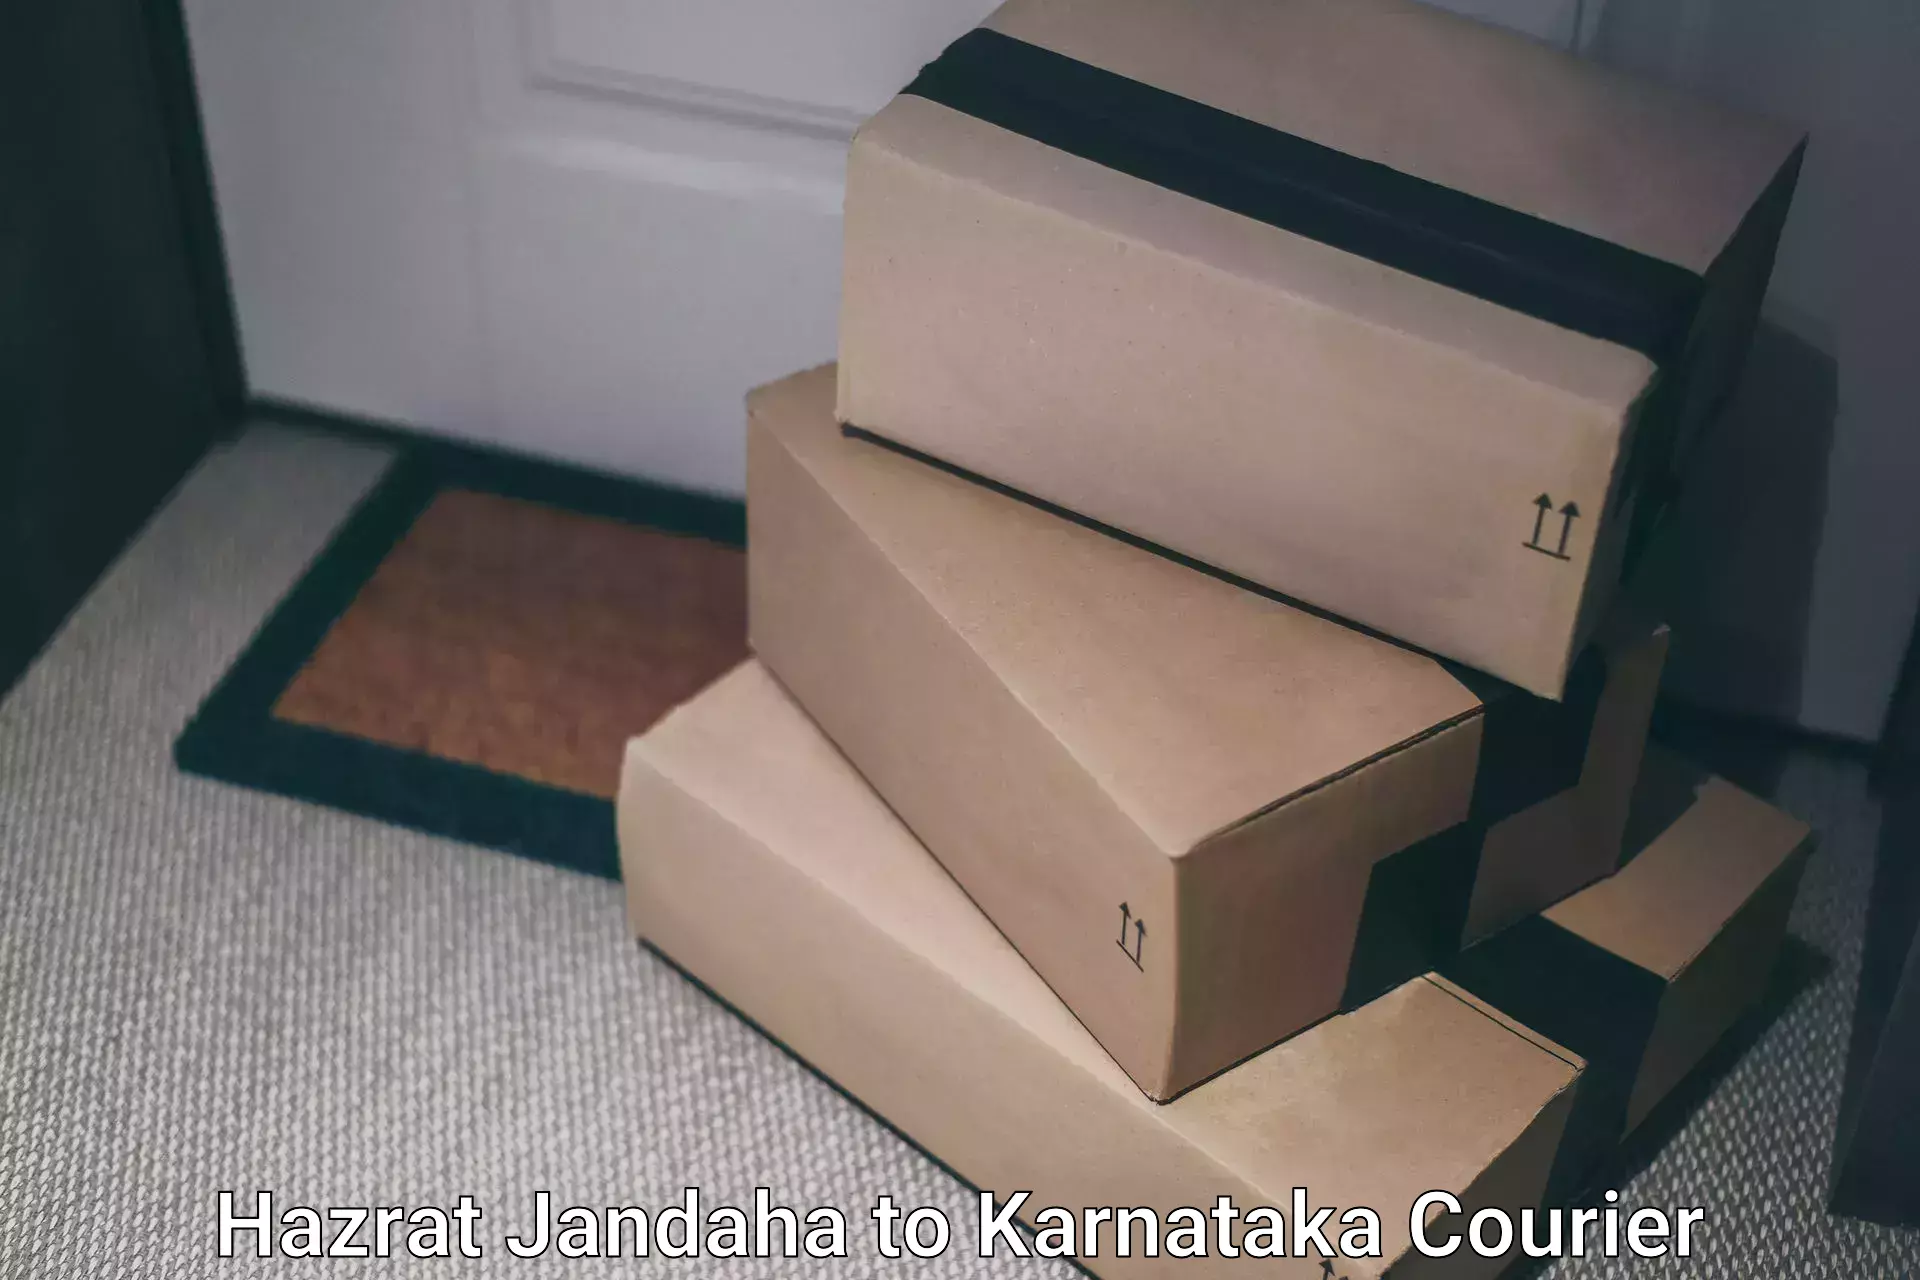 Easy access courier services Hazrat Jandaha to Karnataka